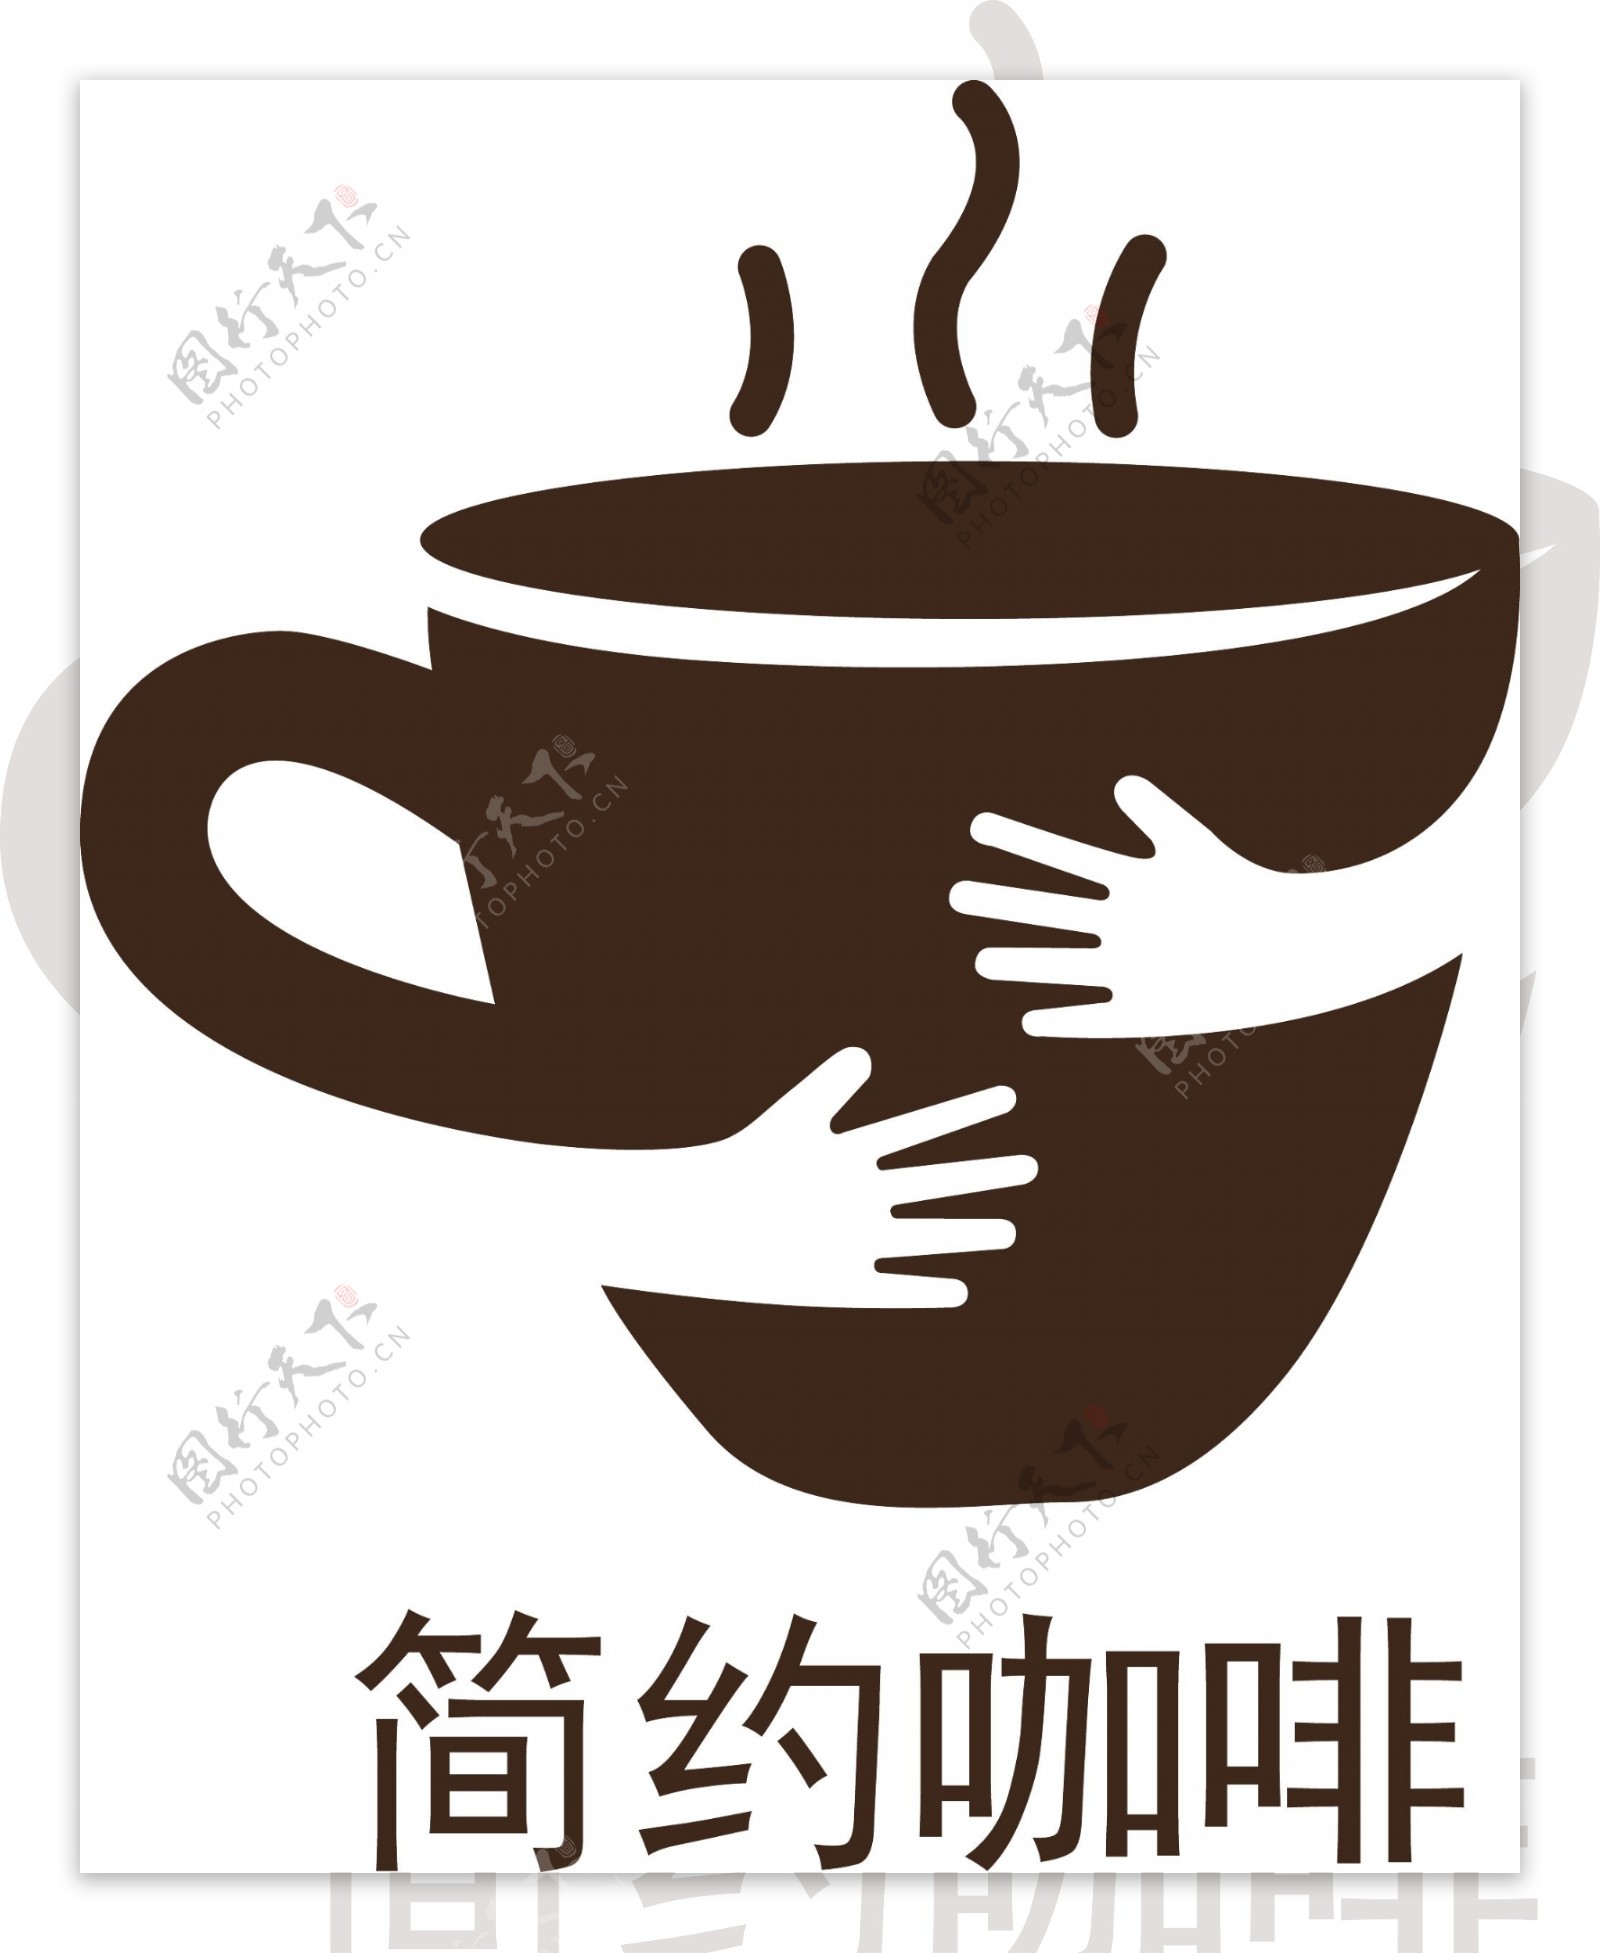 简约大气咖啡店logo标志